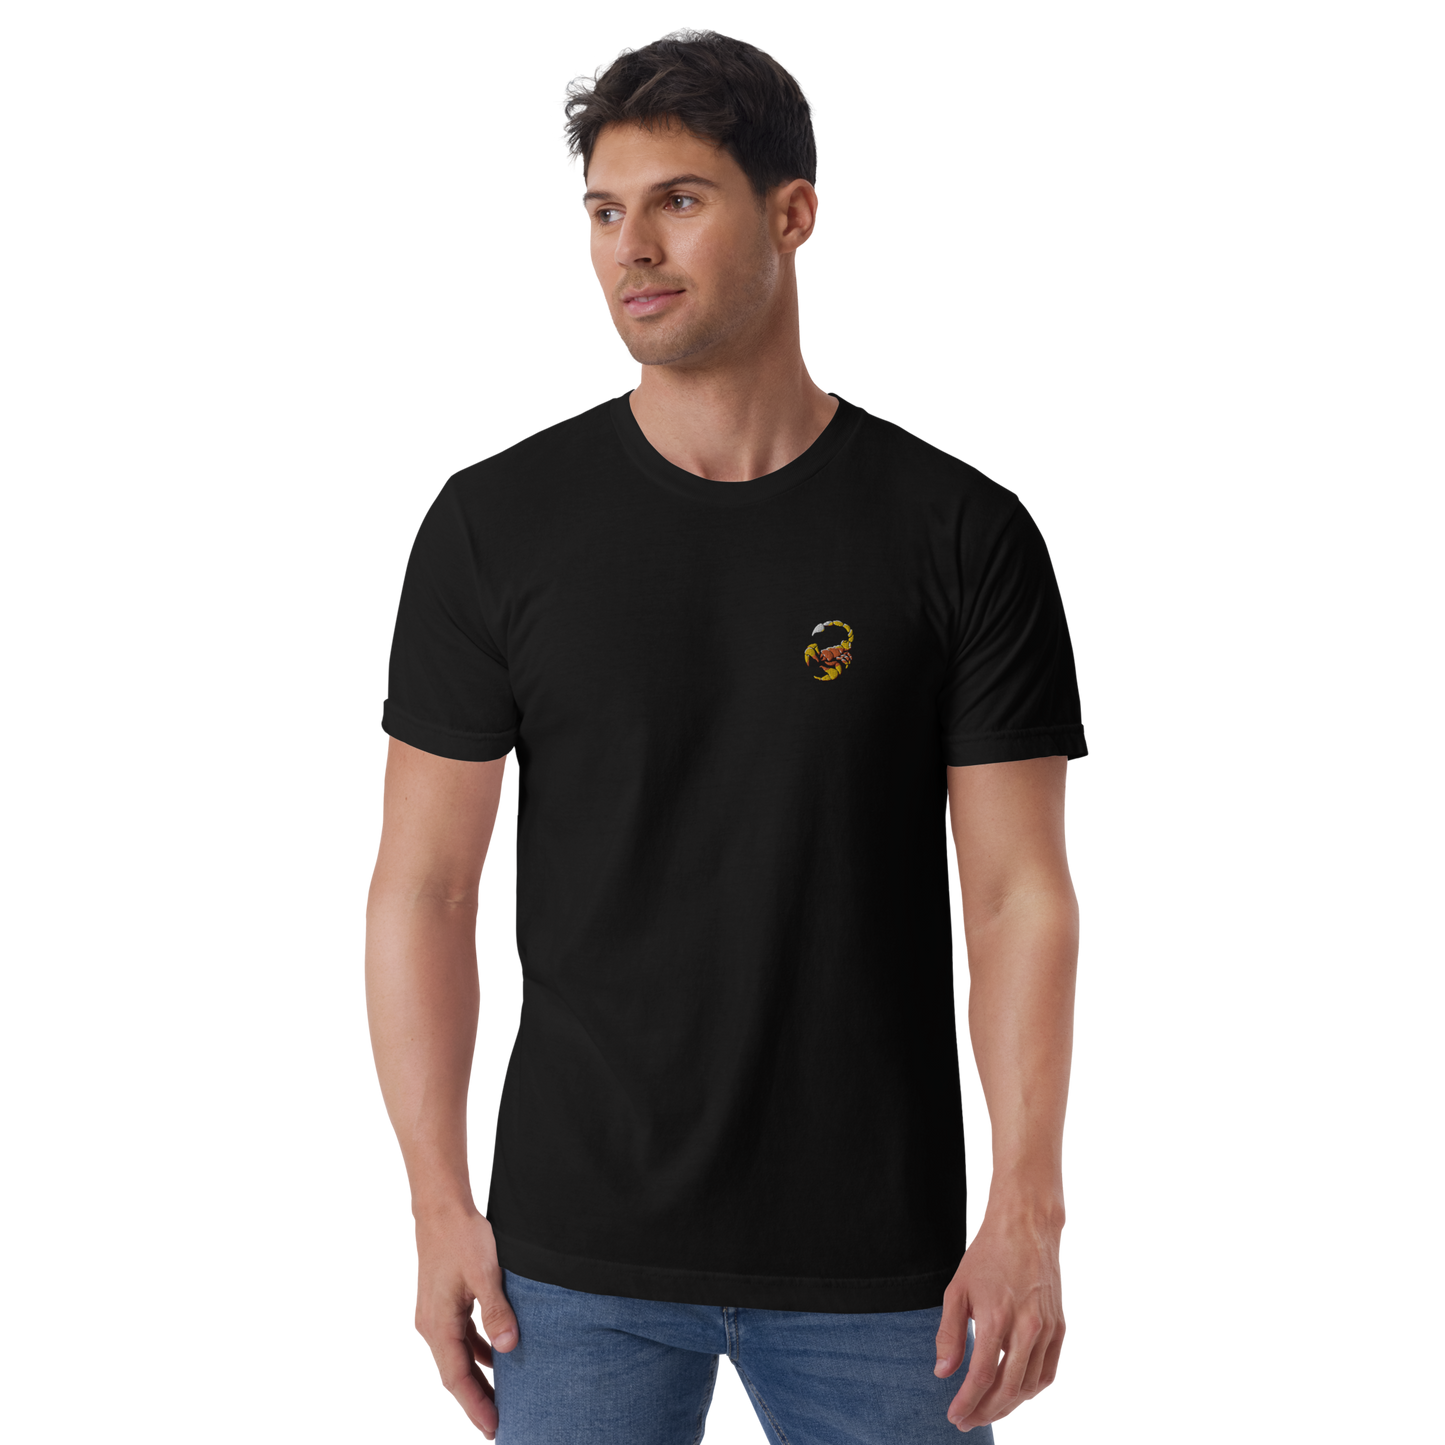 "Scorpio" Unisex T-Shirt by nasmore